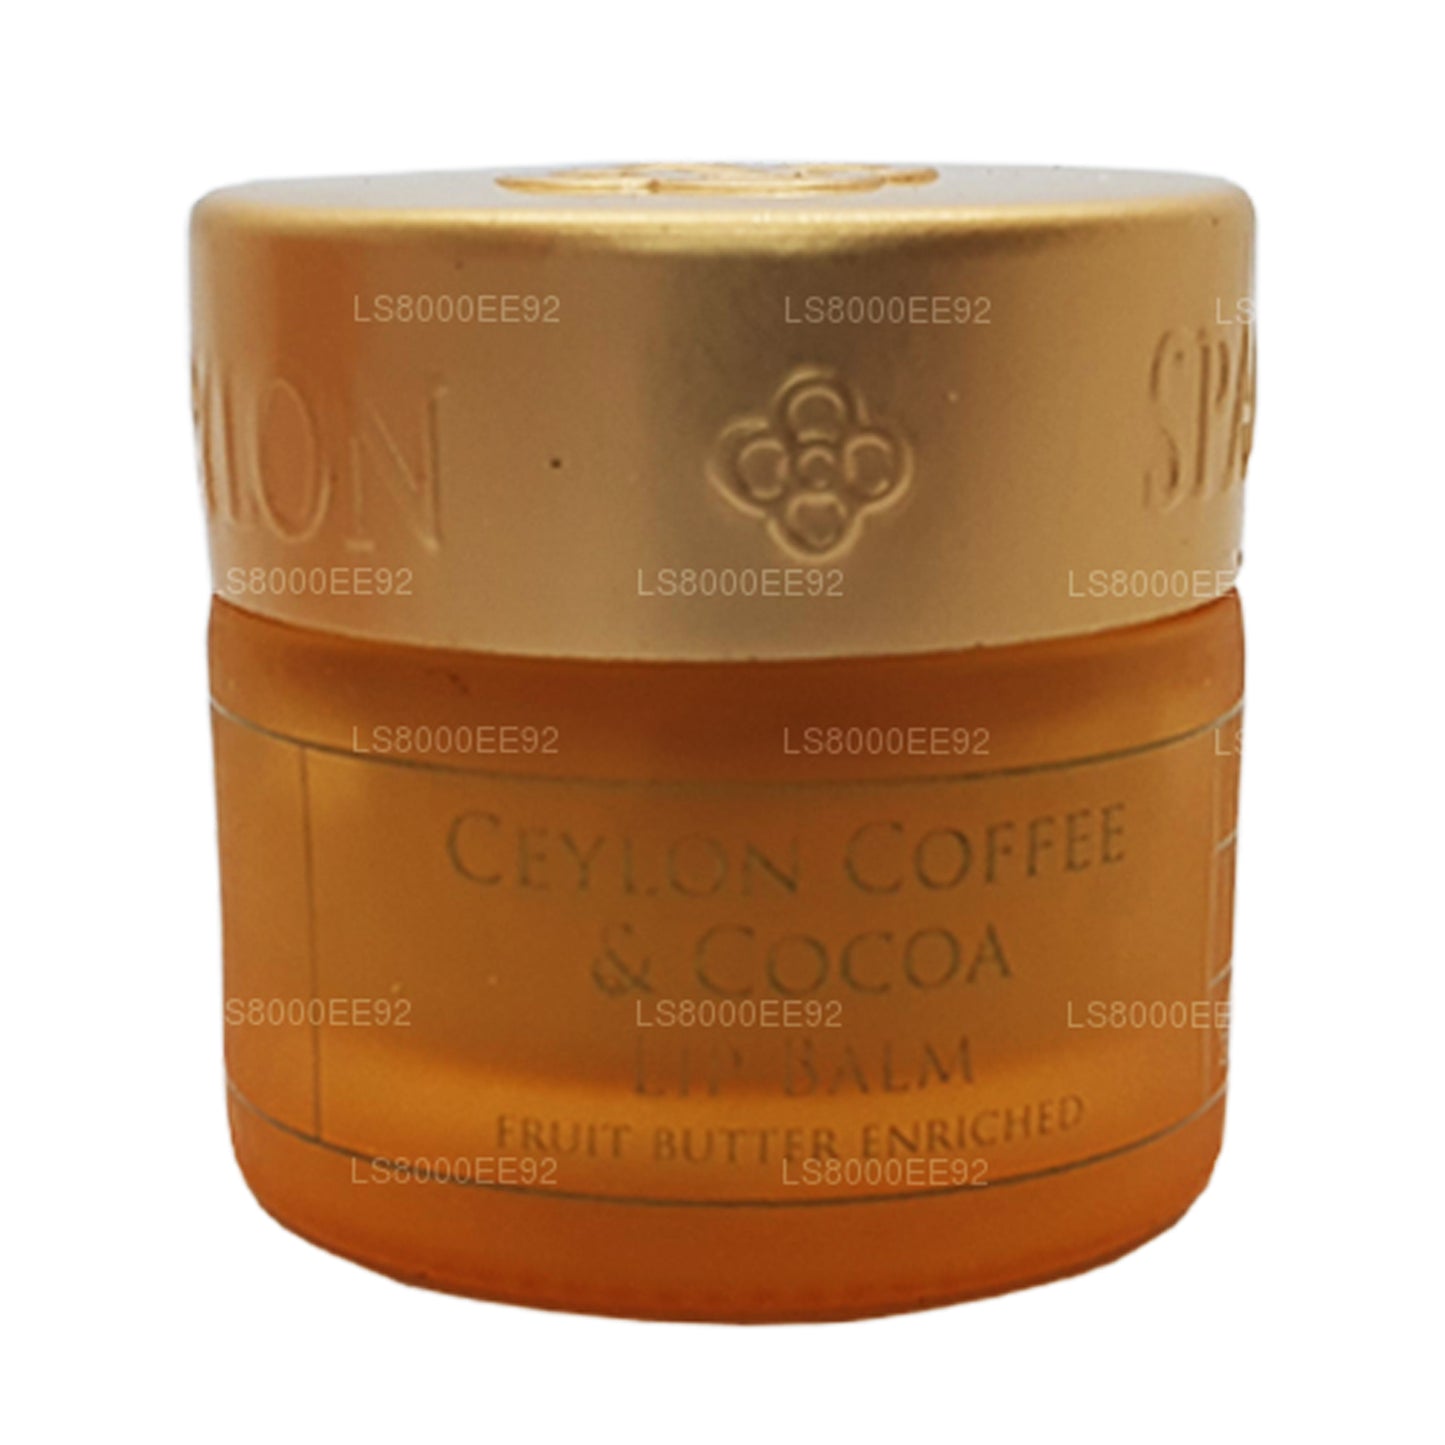 Balsamo per labbra Spa Ceylon al caffè e cacao (10g)